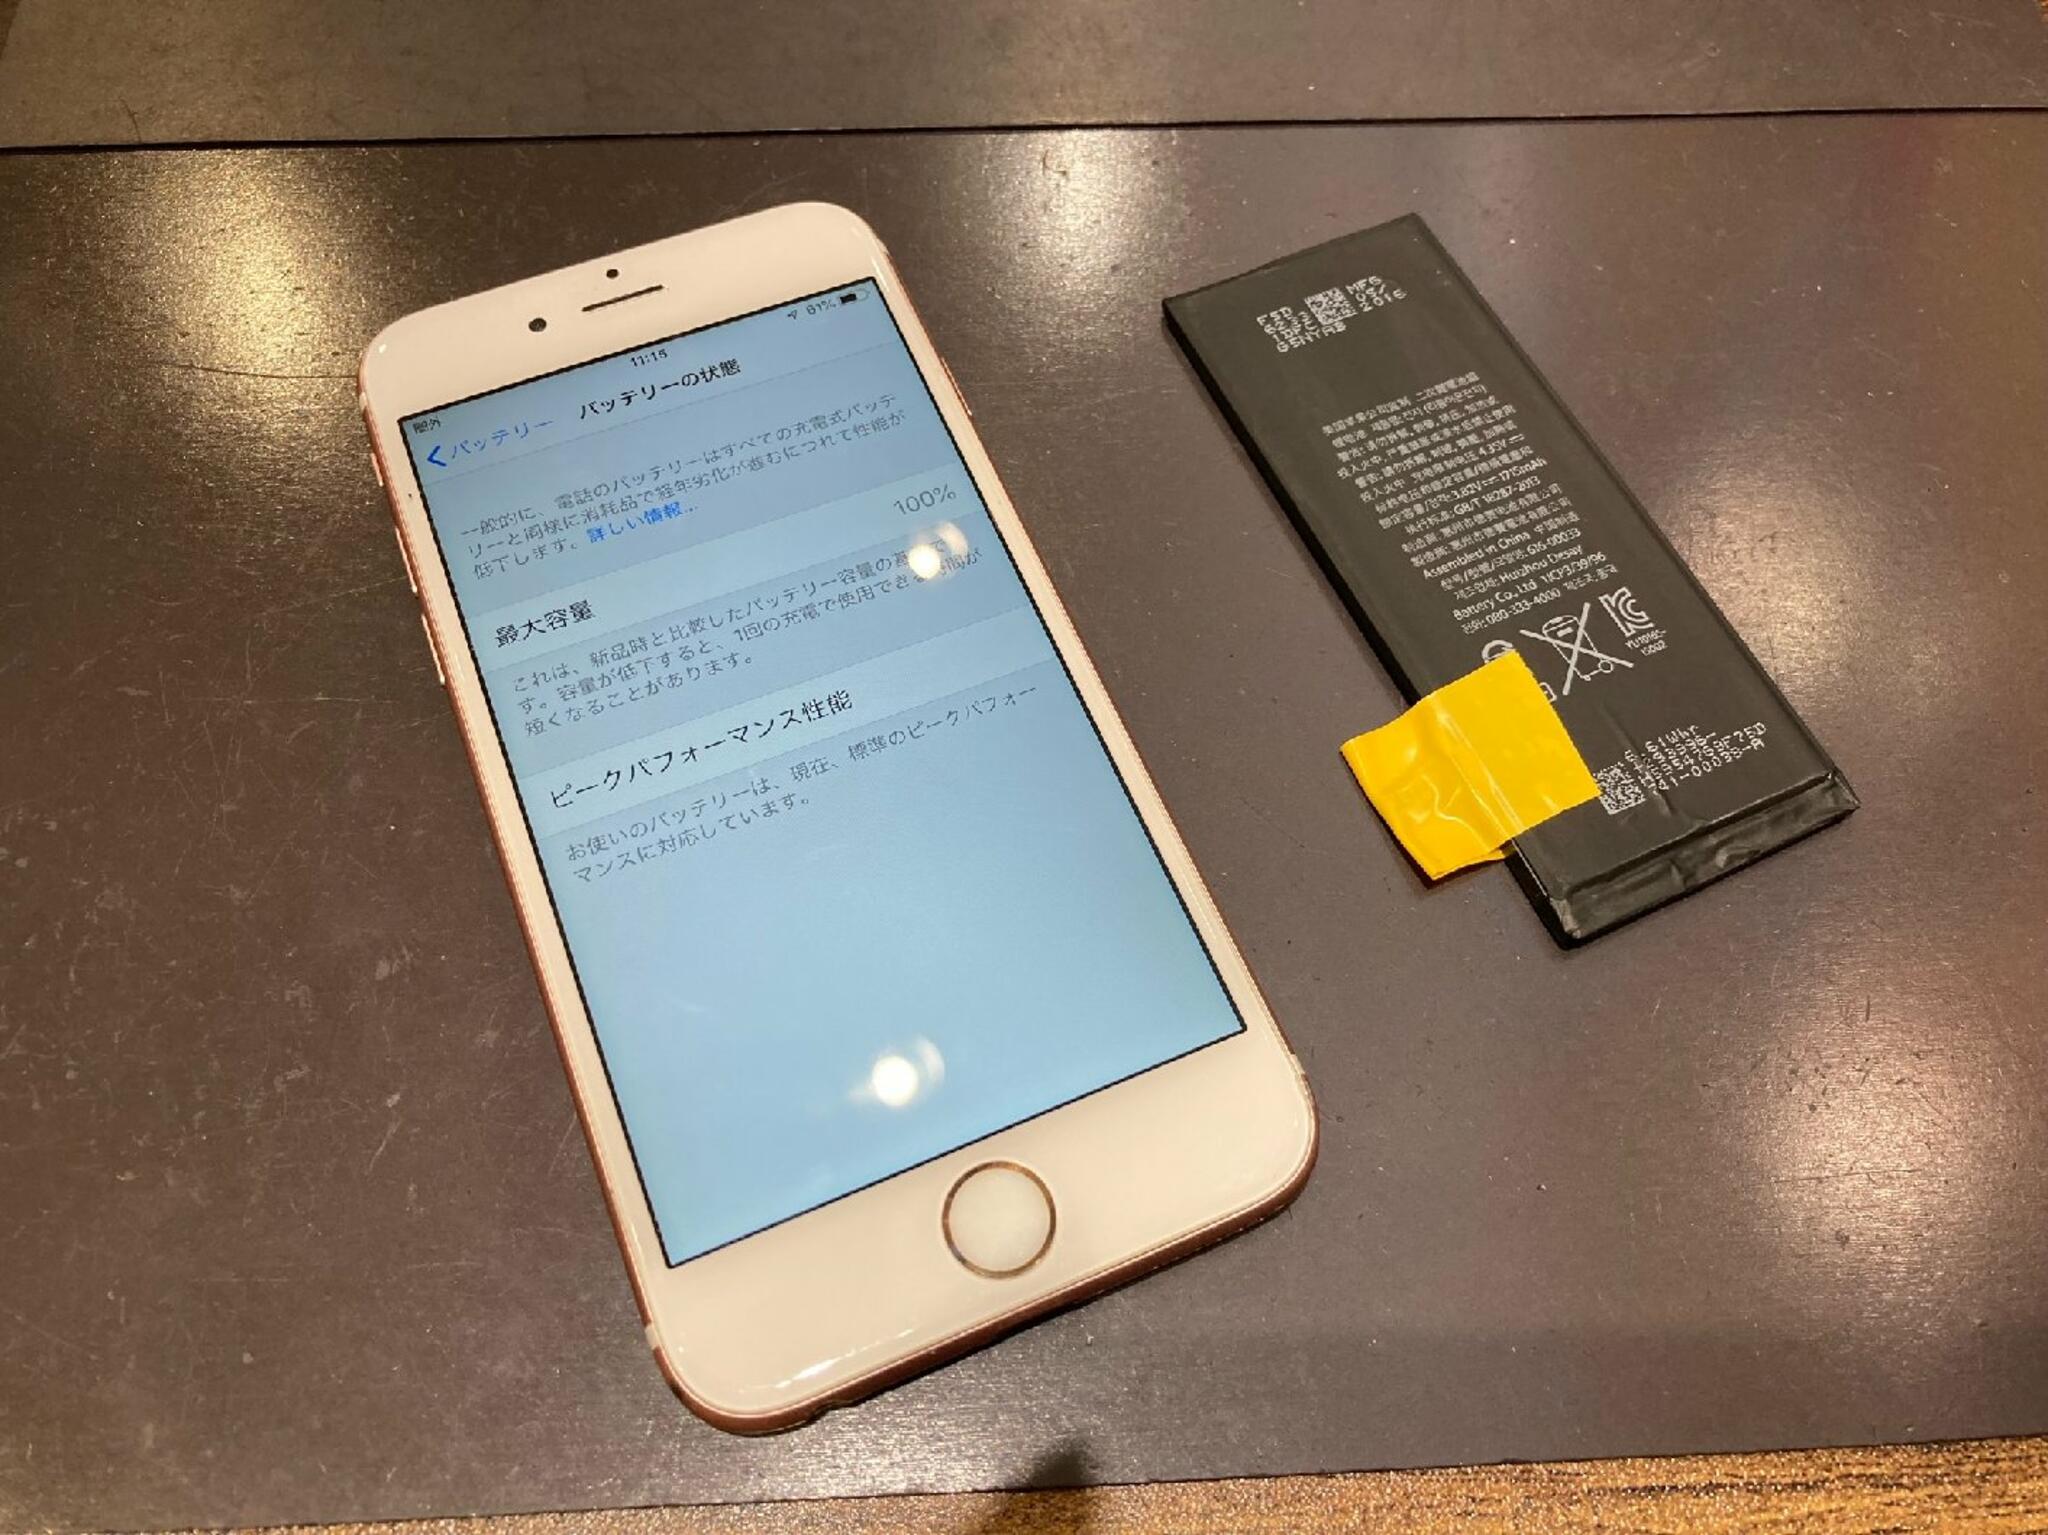 iPhone・iPad・Switch修理店 スマートクール イオンモール広島祇園店からのお知らせ( GW 前にバッテリー交換しませんか？ )に関する写真